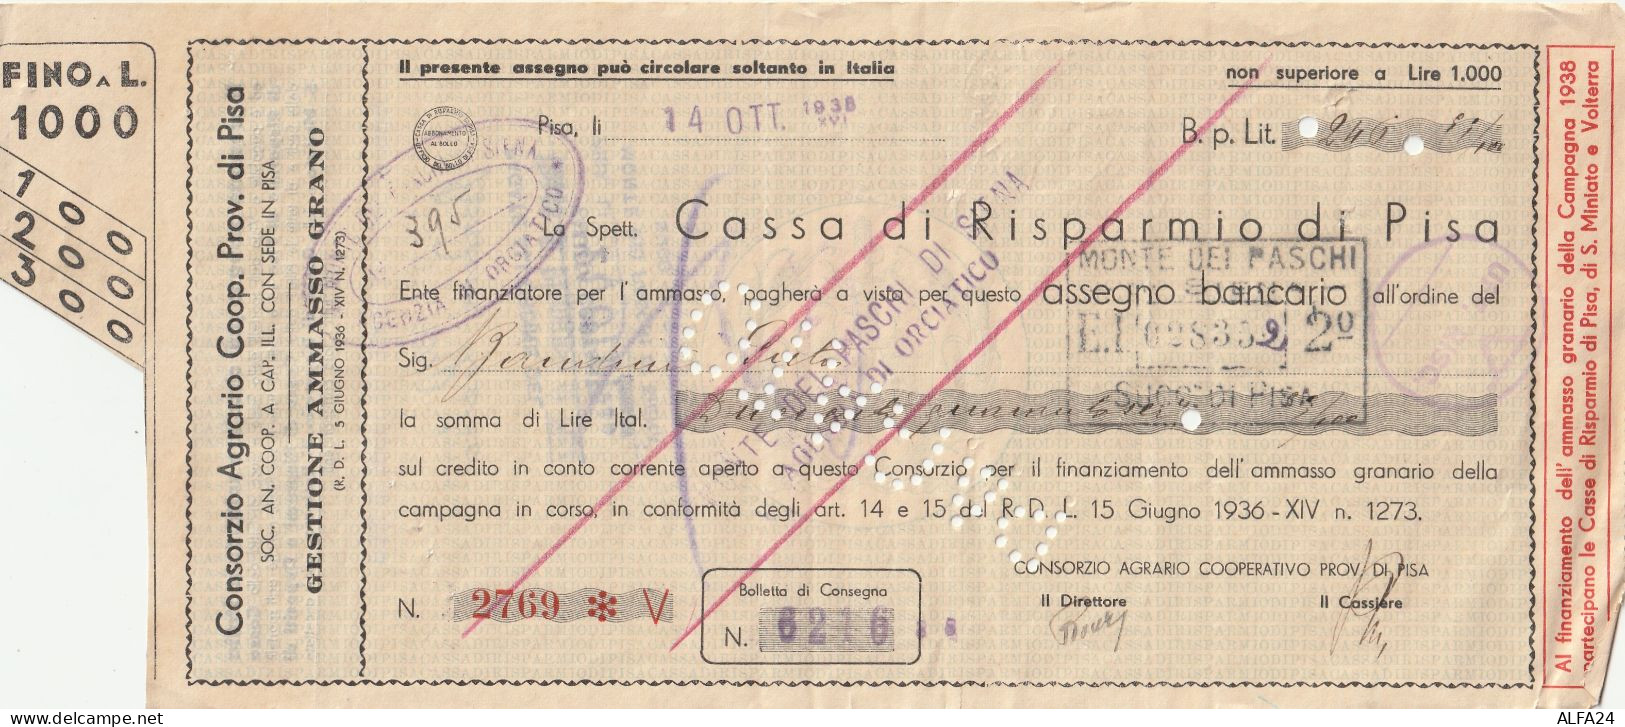 ASSEGNO 1938 CASSA RISPARMIO PISA Spiegazzato (ZP3599 - [10] Cheques Y Mini-cheques